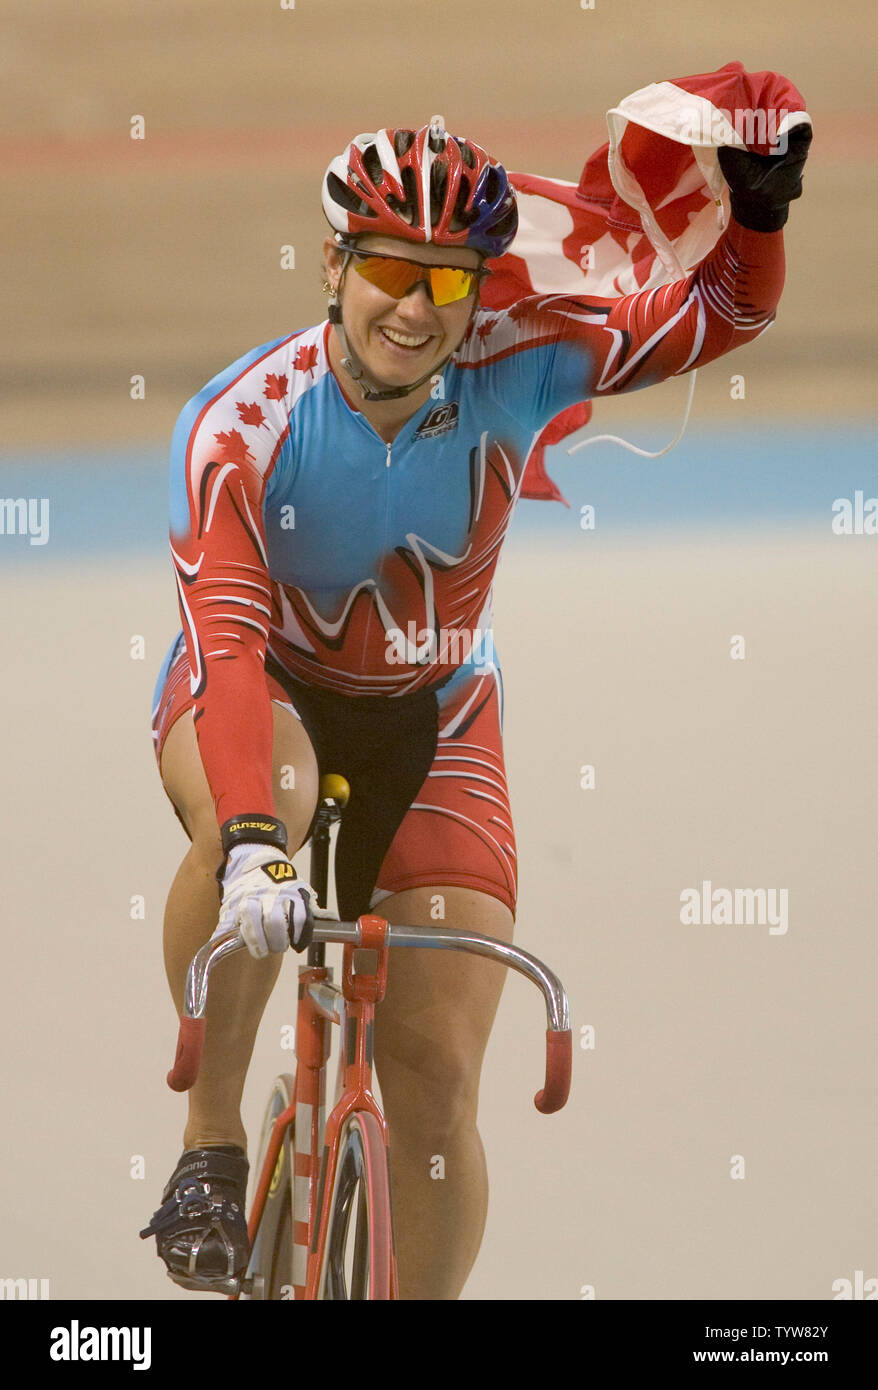 Canada's Lori-Ann Muenzer celebra dopo aver battuto la Russia Tamilla Abassova per vincere la medaglia d'oro nel femminile Sprint di pista ciclabile al 2004 Atene giochi olimpici estivi, 24 agosto 2004. (UPI Photo/ Heinz Ruckemann) Foto Stock